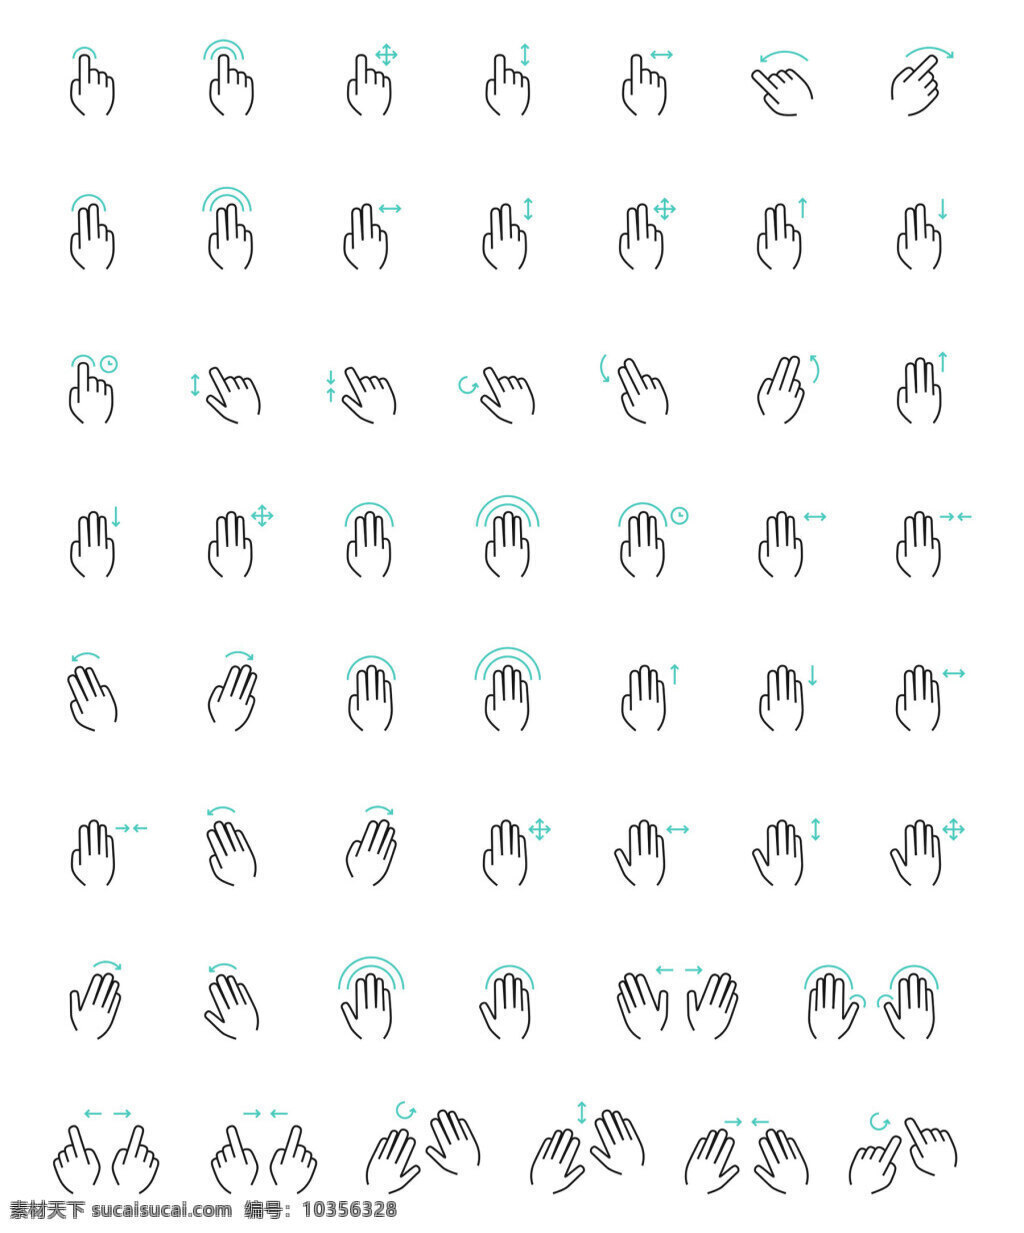 54手势图标 创意图标 图标下载 图标设计 表情图标 迷你图标 通用图标 网页图标 icon